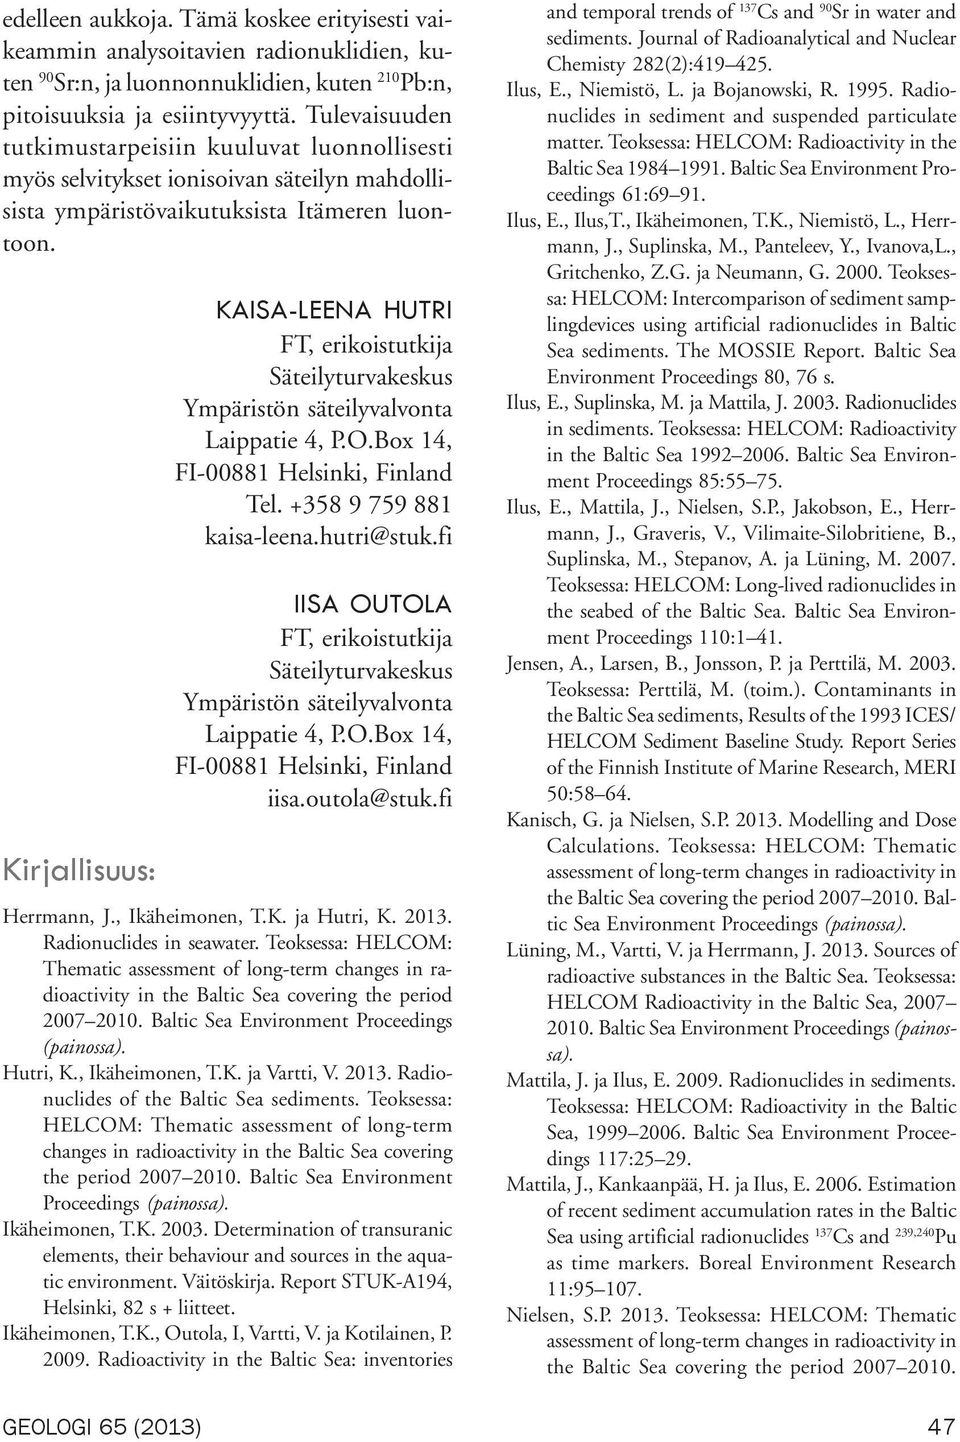 Kirjallisuus: GEOLOGI 65 (2013) KAISA-LEENA HUTRI FT, erikoistutkija Säteilyturvakeskus Ympäristön säteilyvalvonta Laippatie 4, P.O.Box 14, FI-00881 Helsinki, Finland Tel. +358 9 759 881 kaisa-leena.